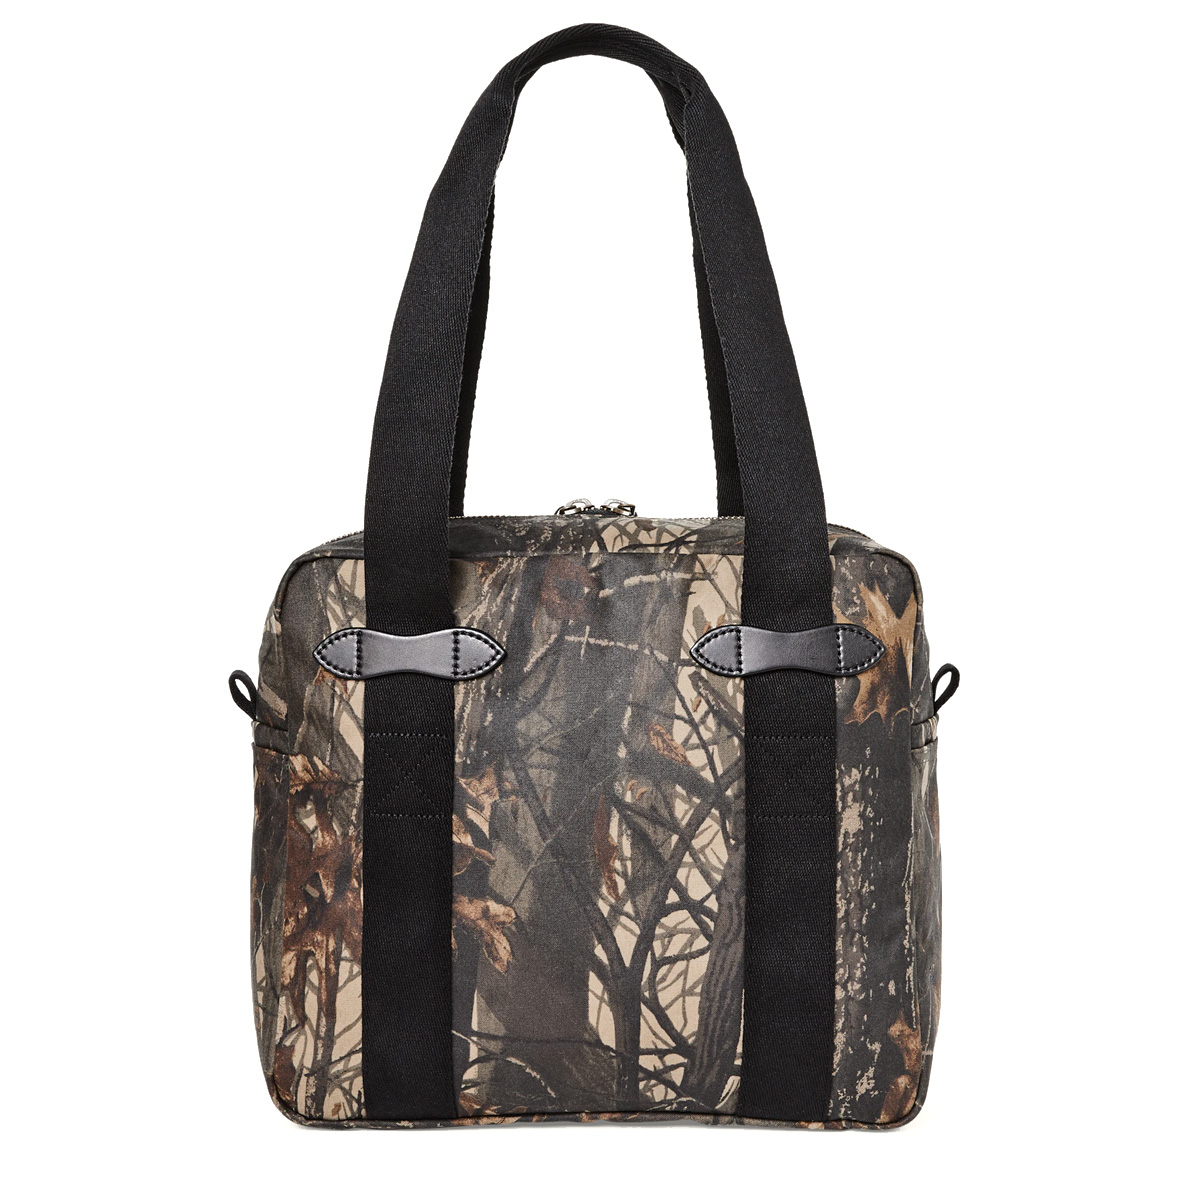 Filson Tin Cloth Tote Bag With Zipper Realtree Hardwoods Camo, een klassiek ogende shopper ontworpen voor het gemakkelijk meenemen van spullen